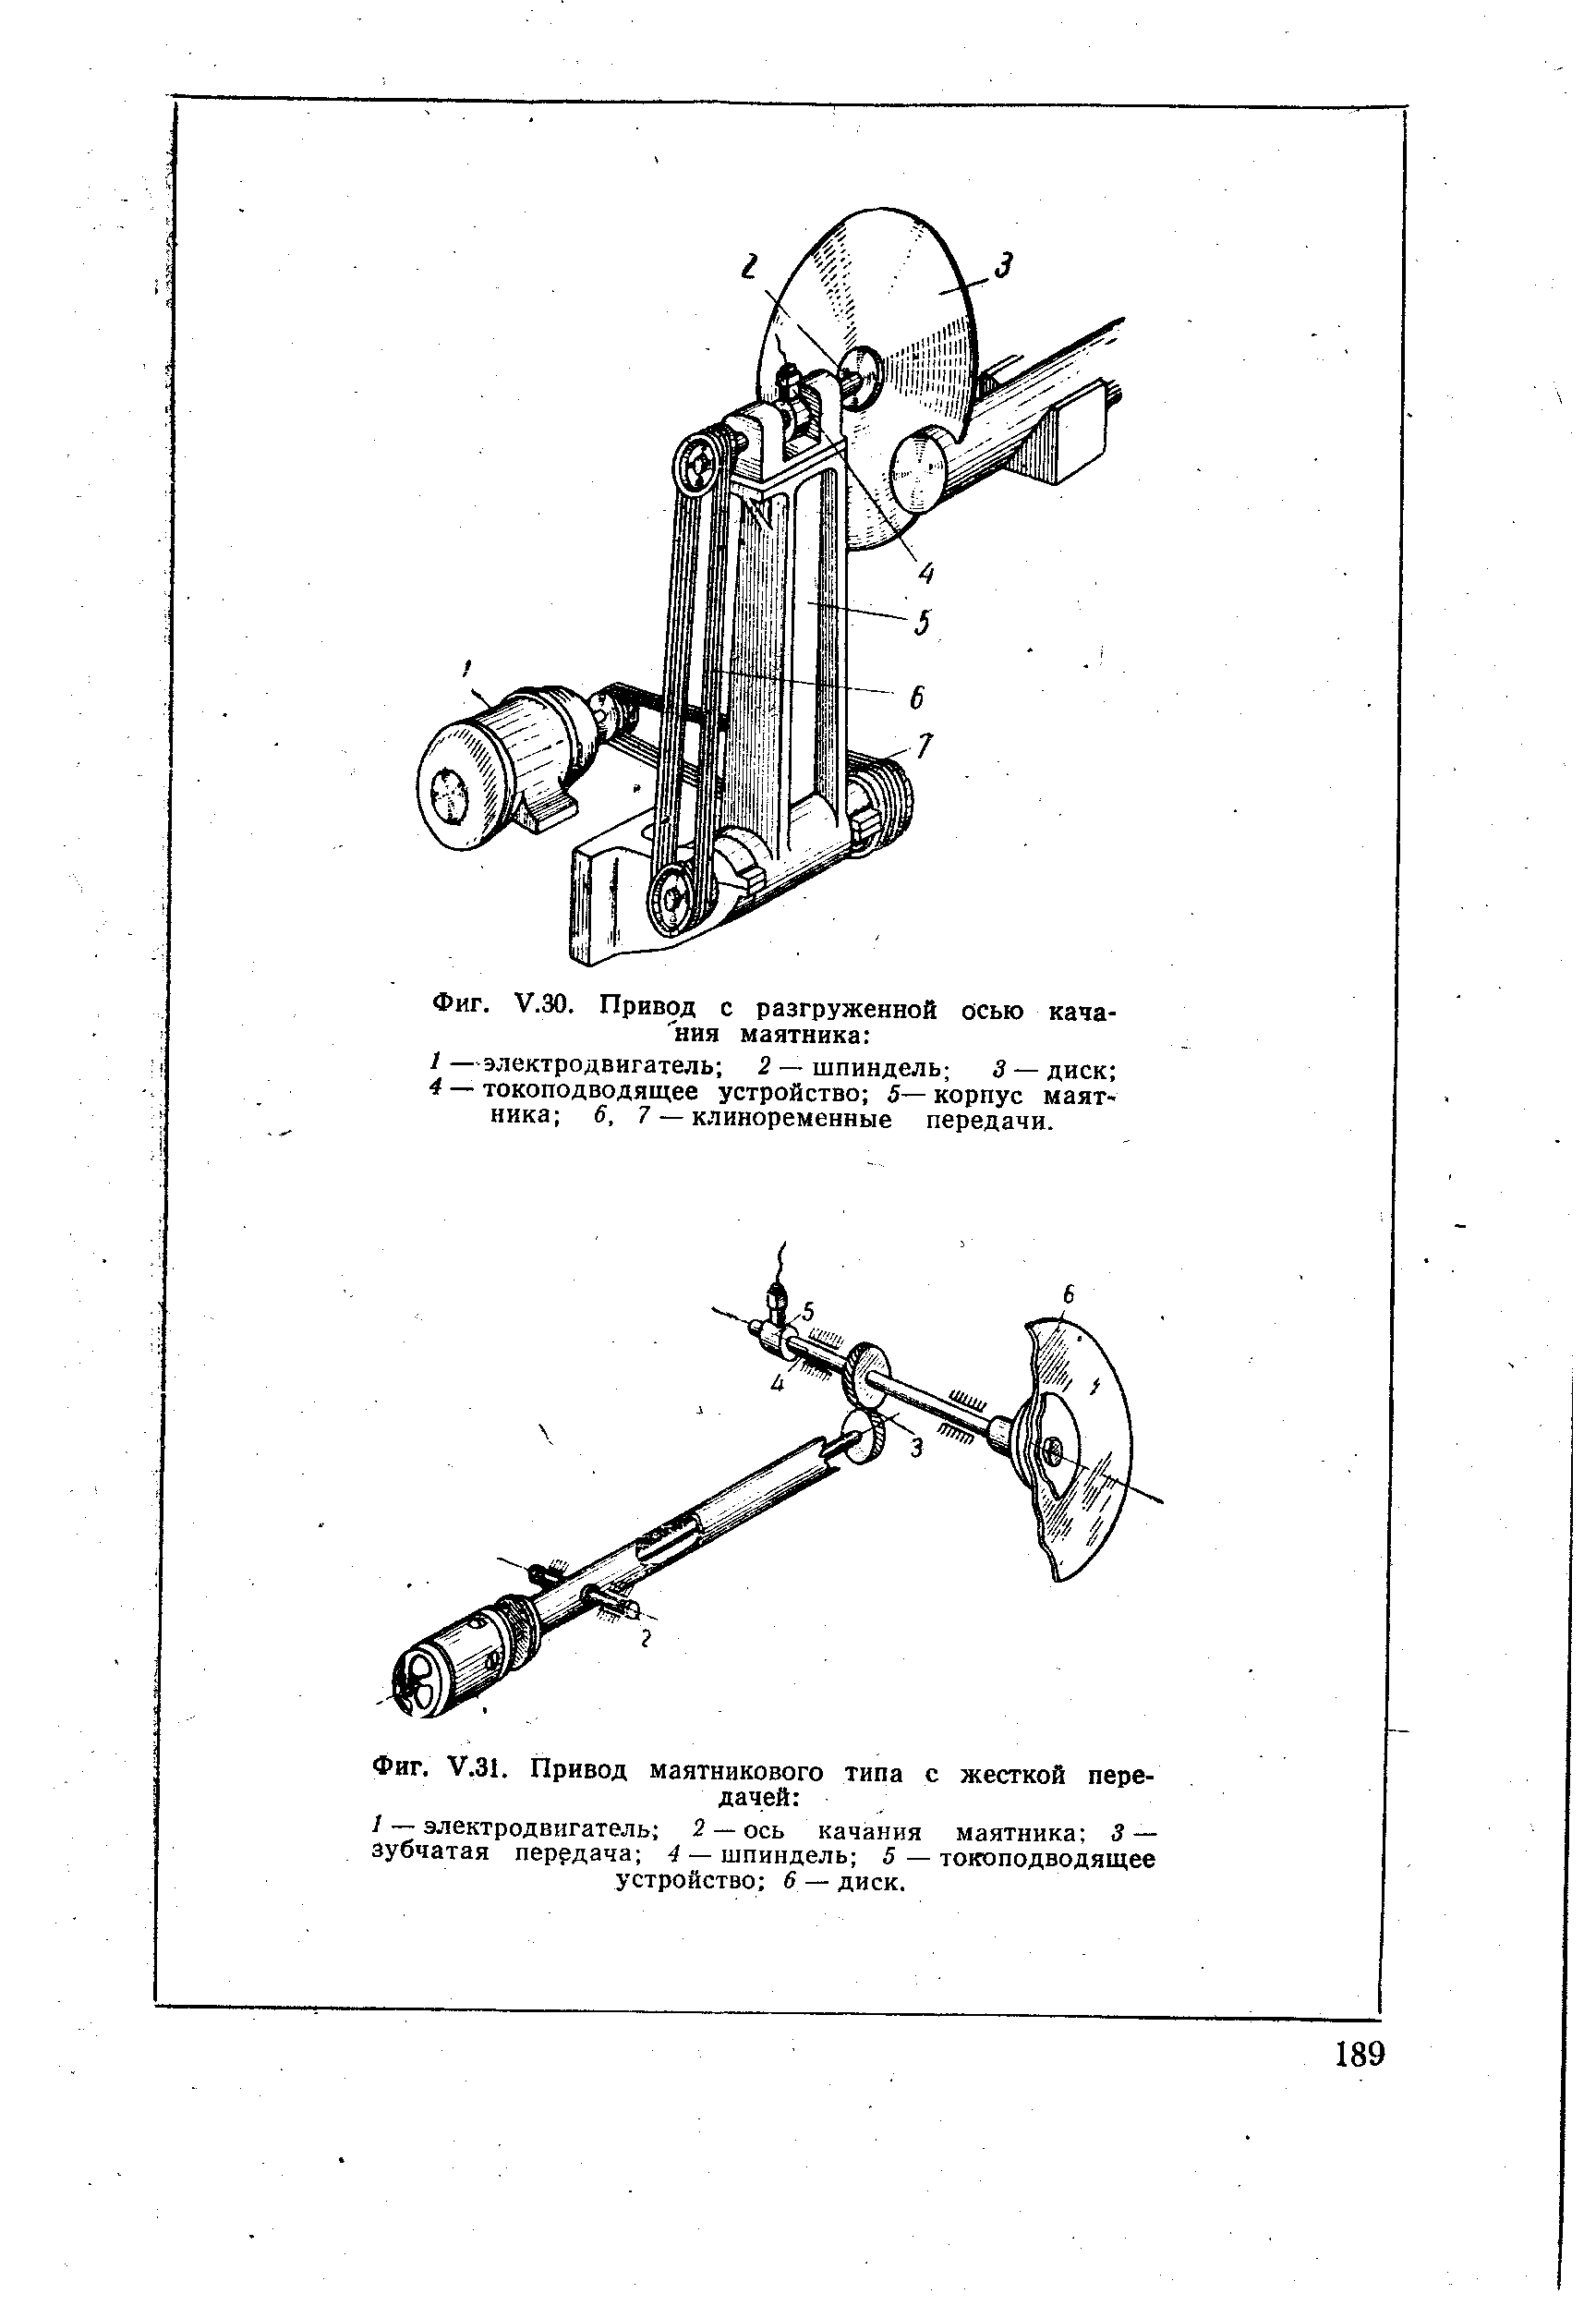 Фиг. V.31. Привод маятникового типа с жесткой передачей 
